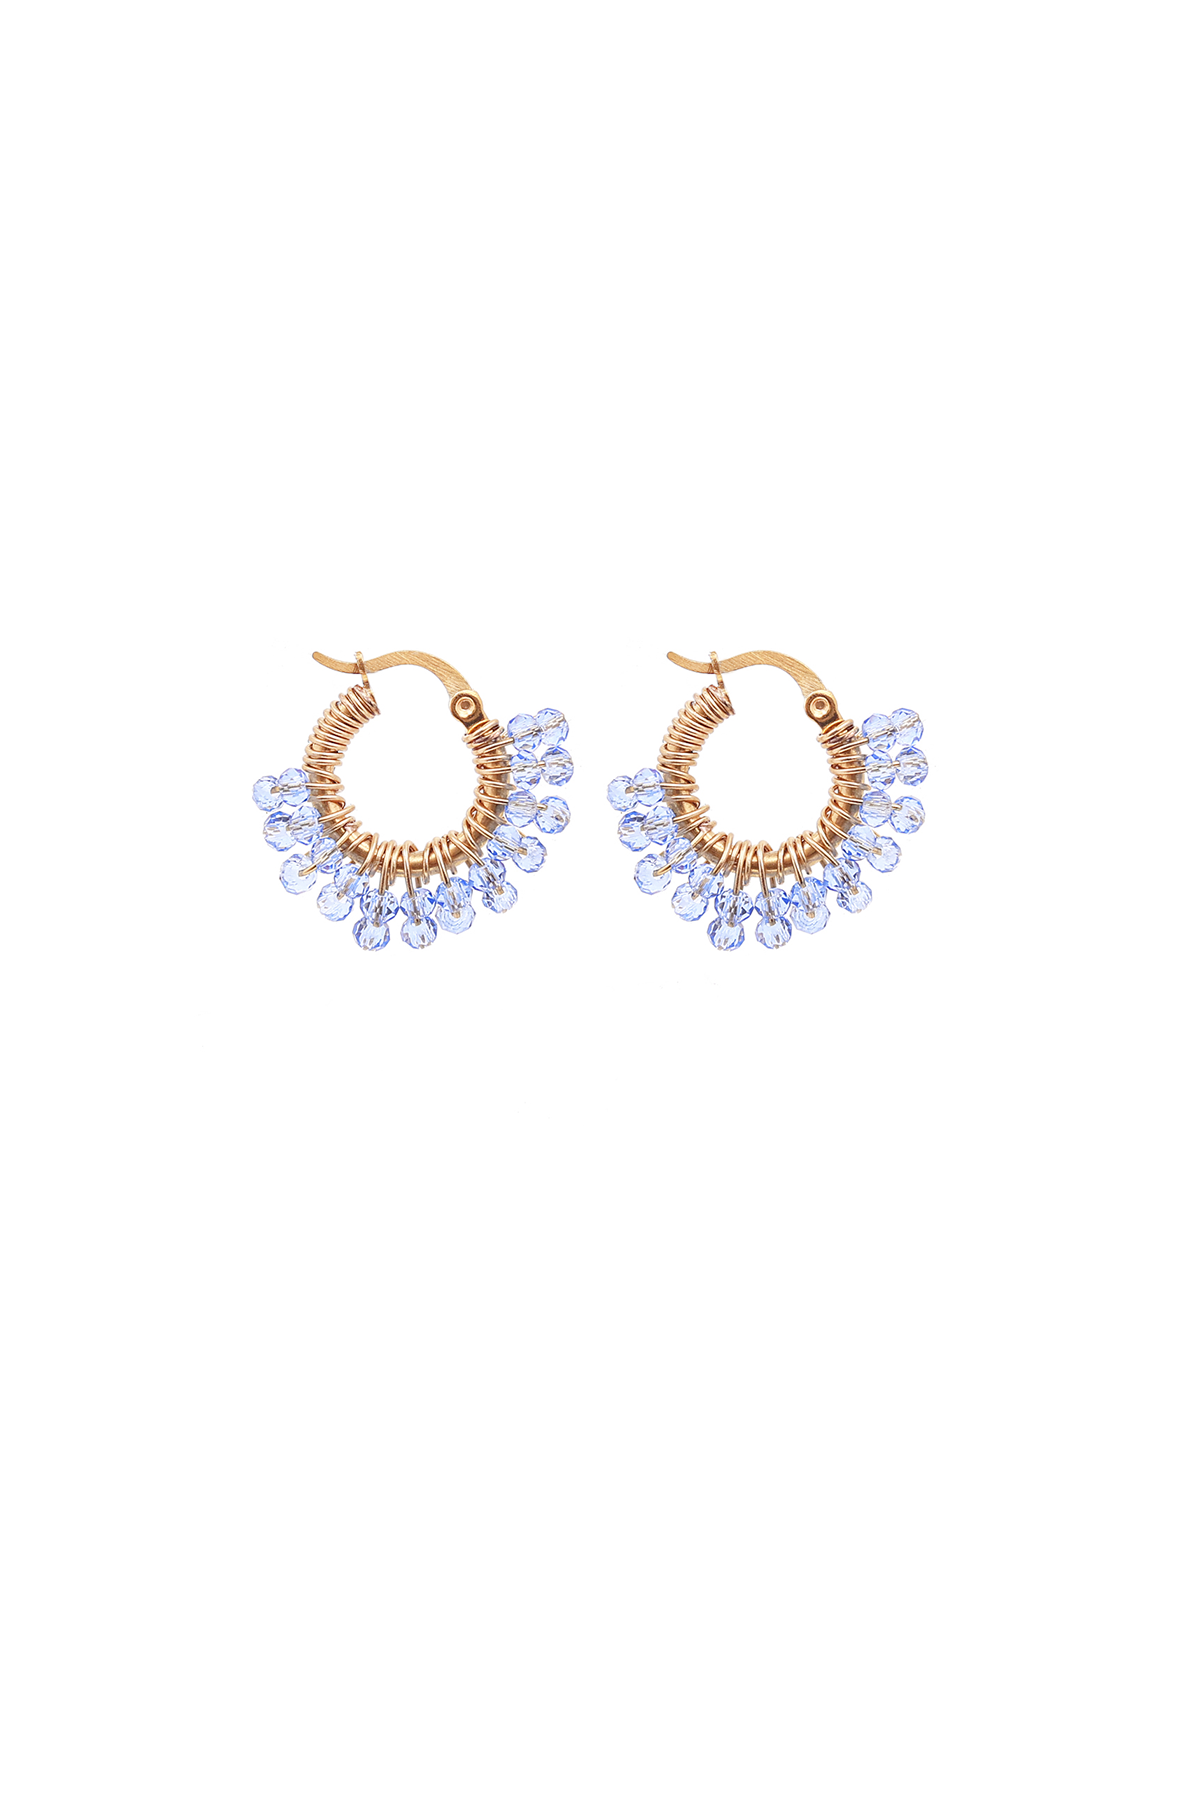 Tiny Glam loop earrings - Skye blue